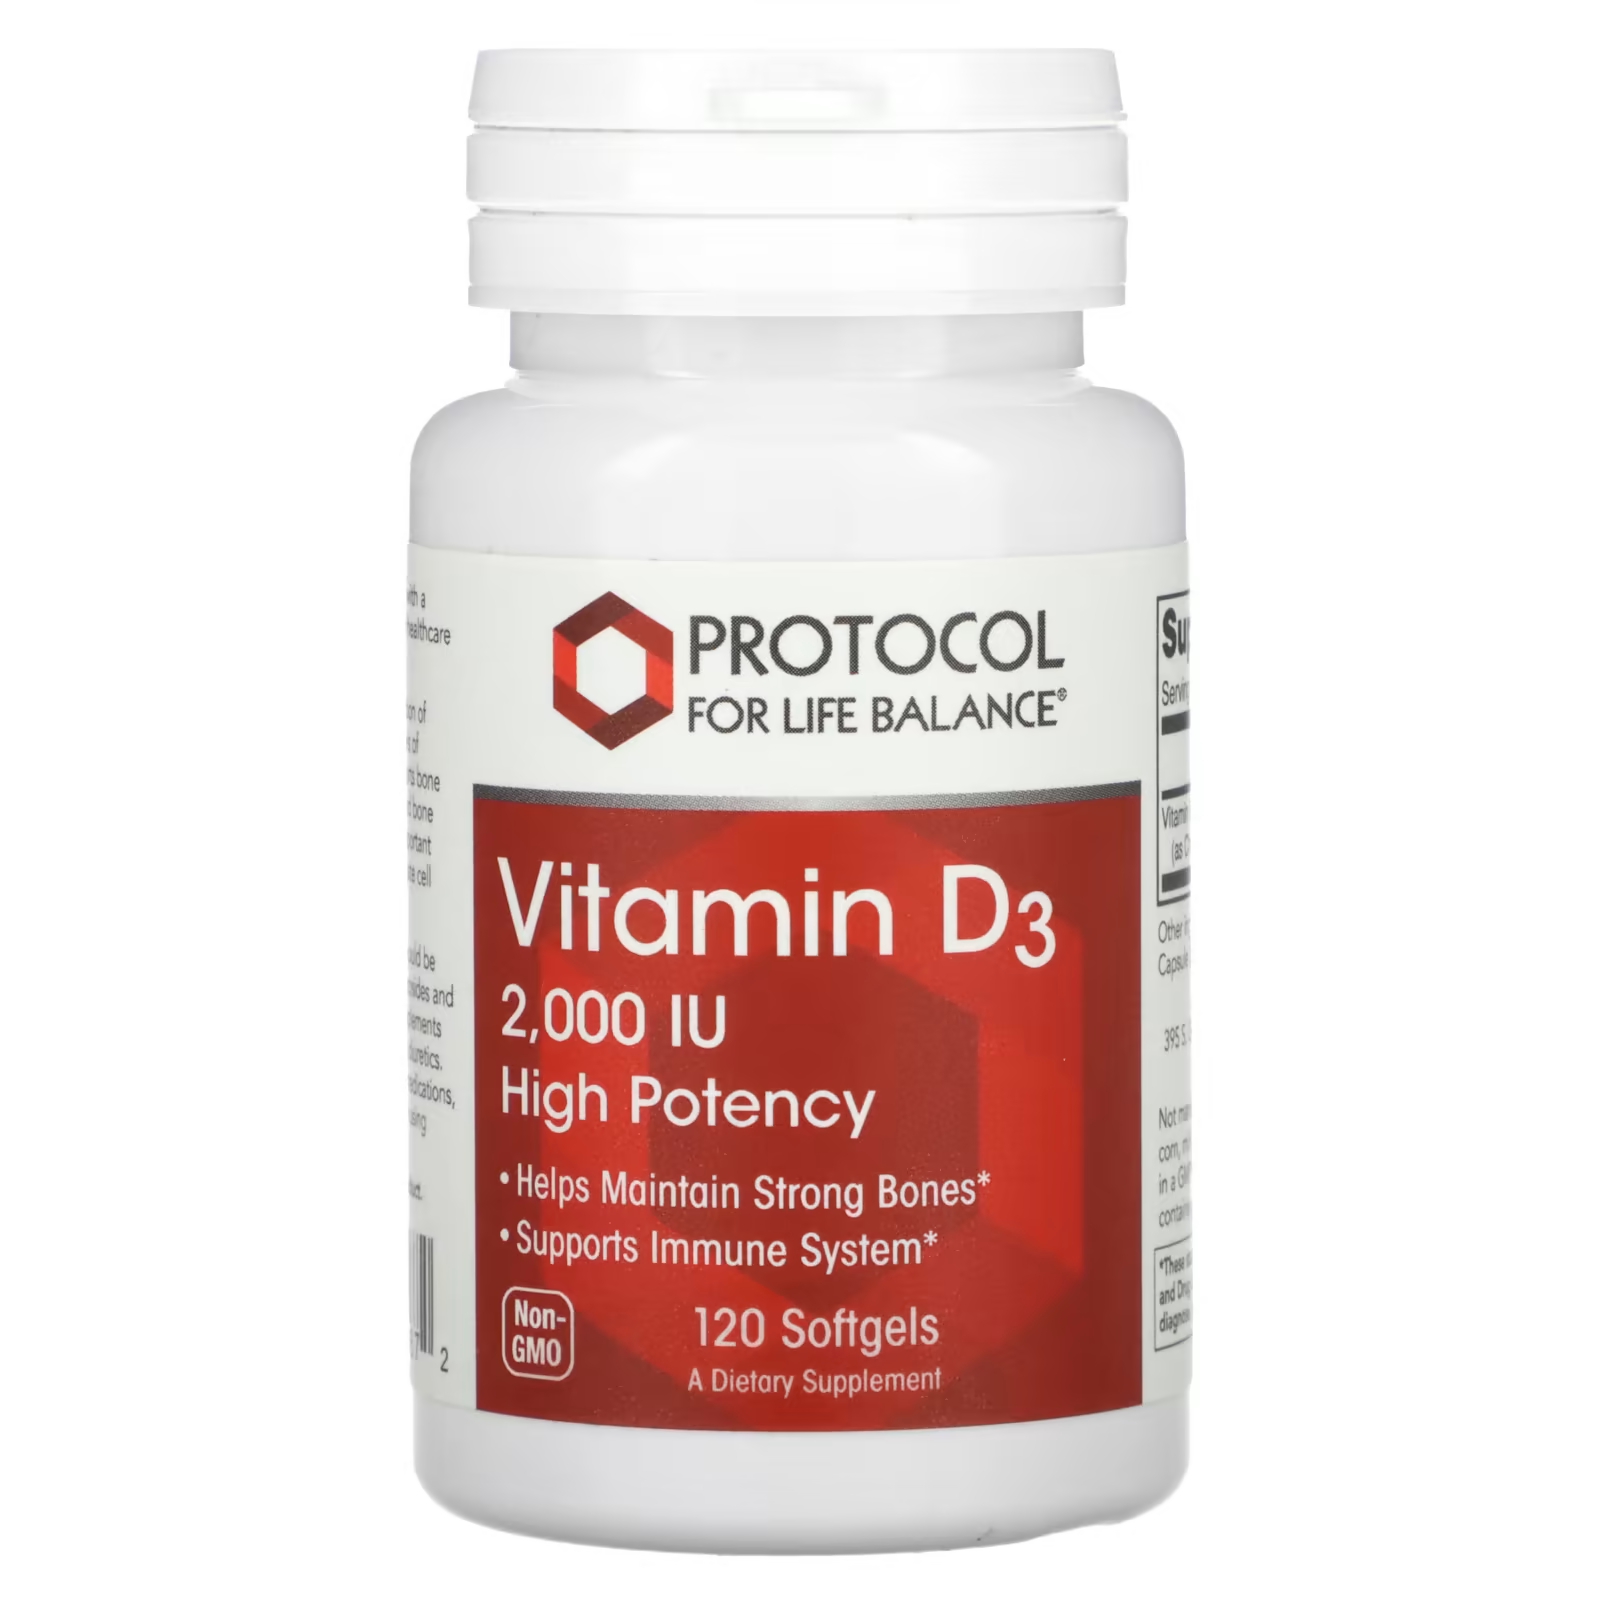 Витамин D3 Protocol for Life Balance высокая эффективность 2000 МЕ, 120 мягких таблеток